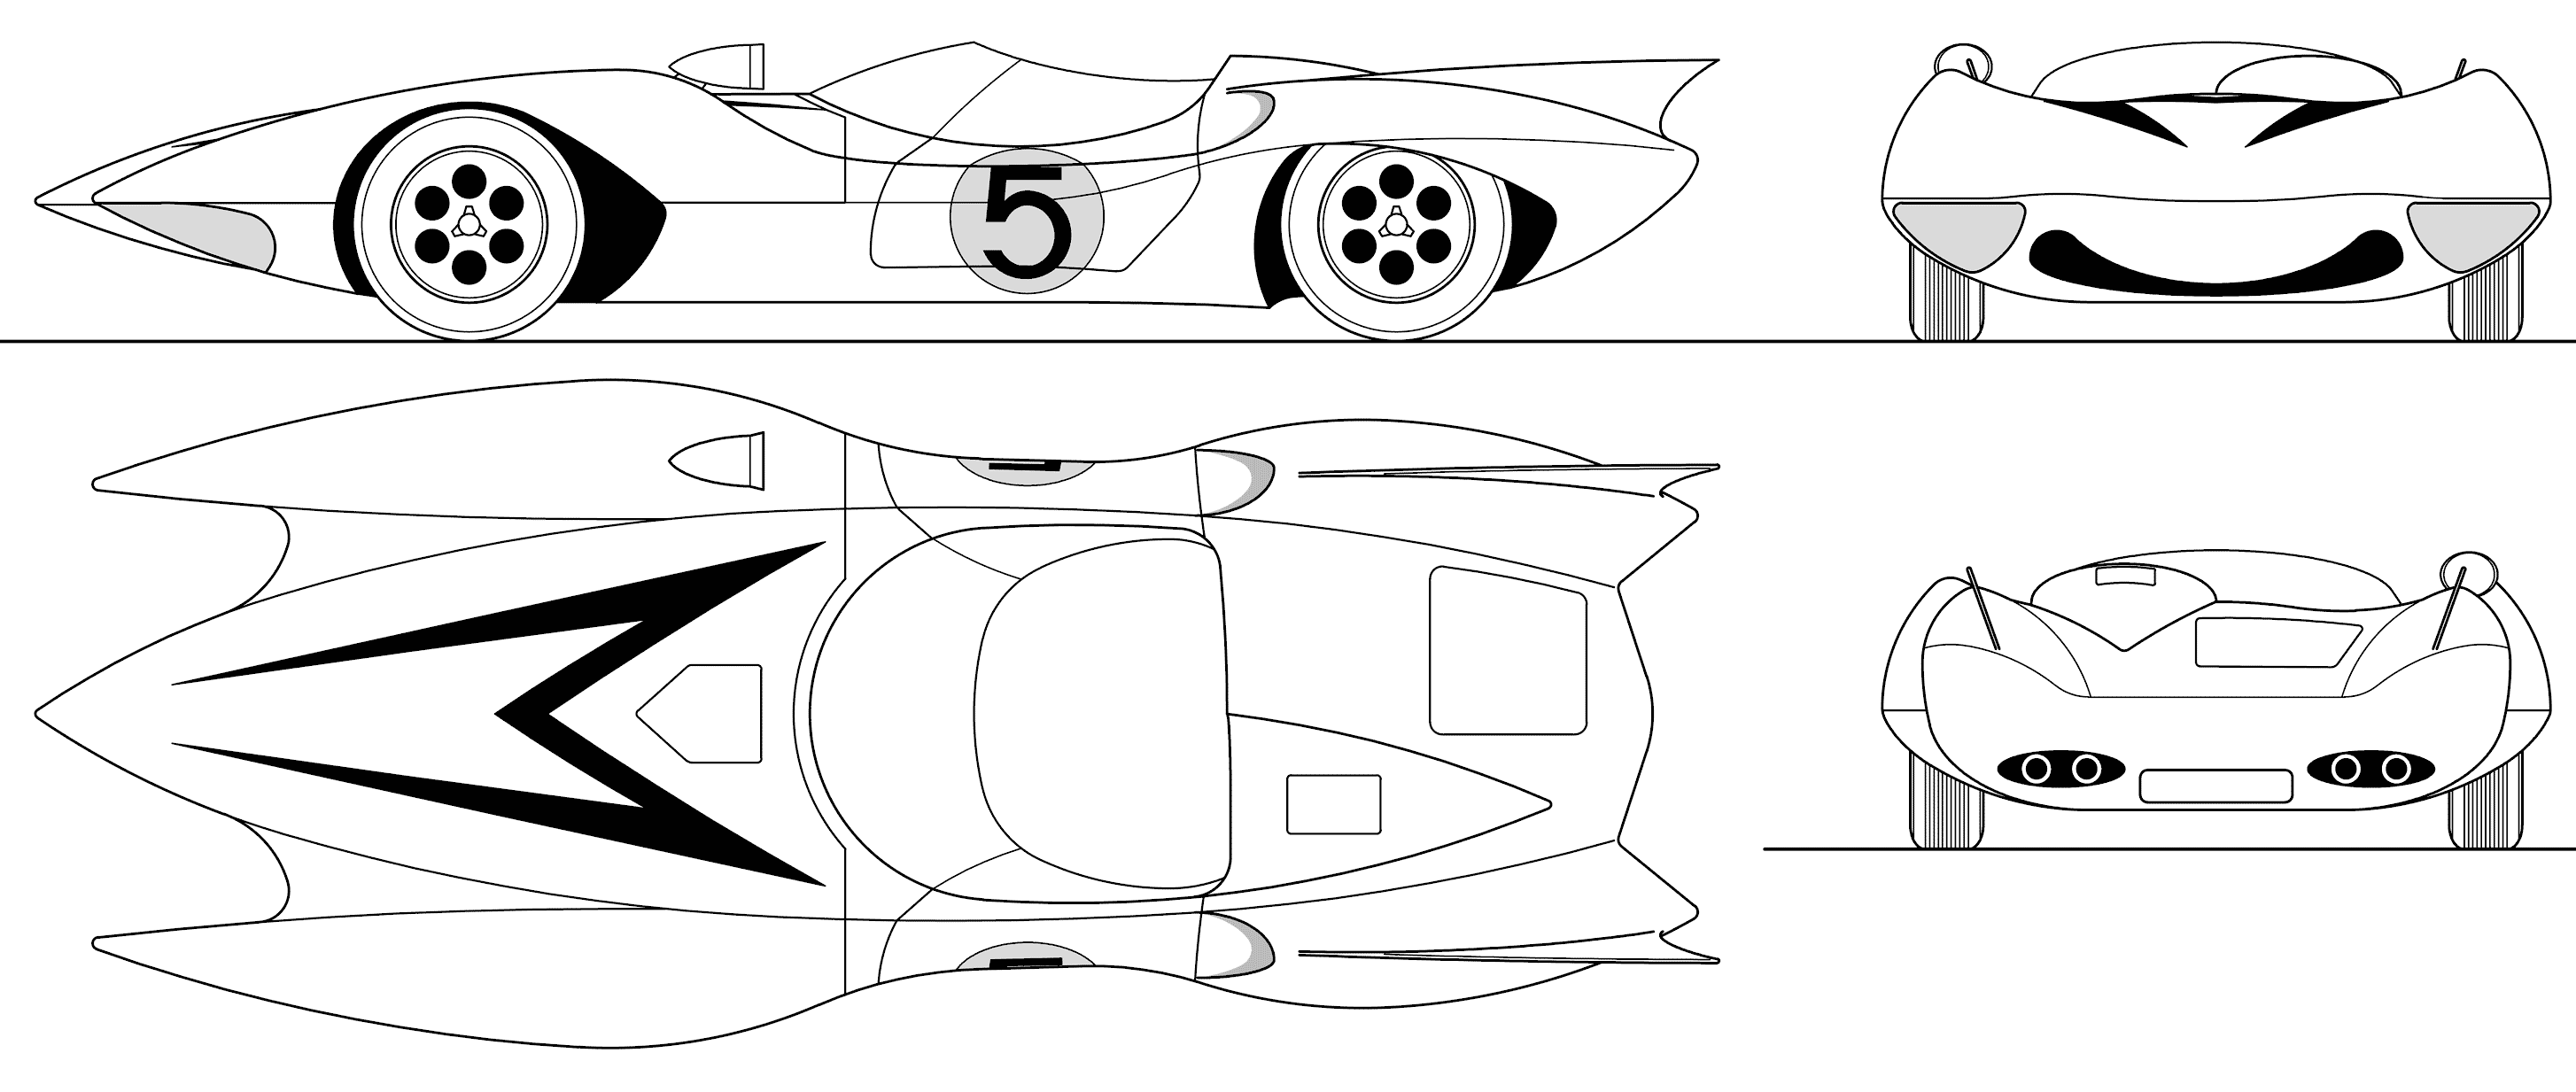 Mach 5 blueprint